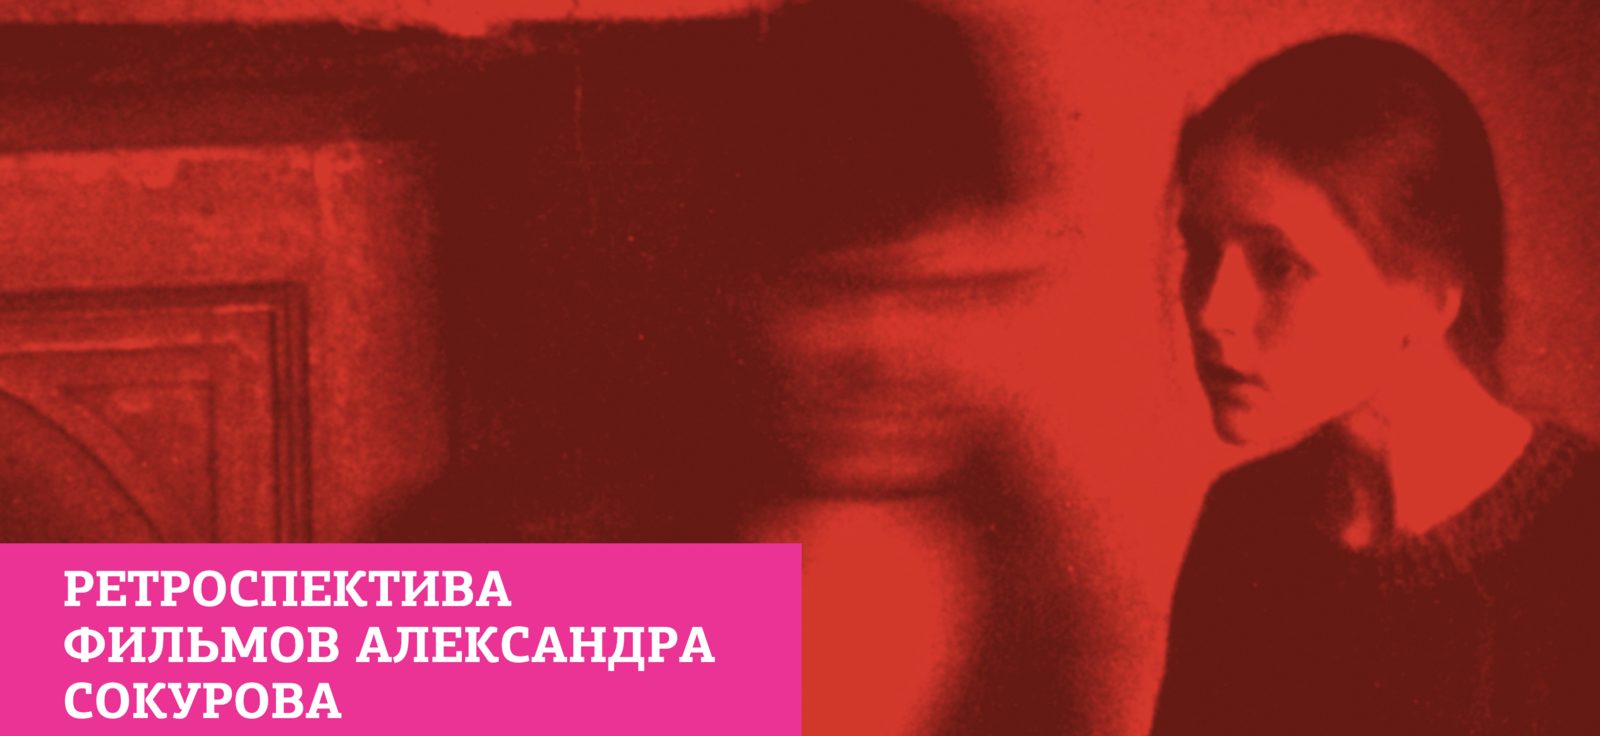 В Москве пройдет ретроспектива фильмов Александра Сокурова